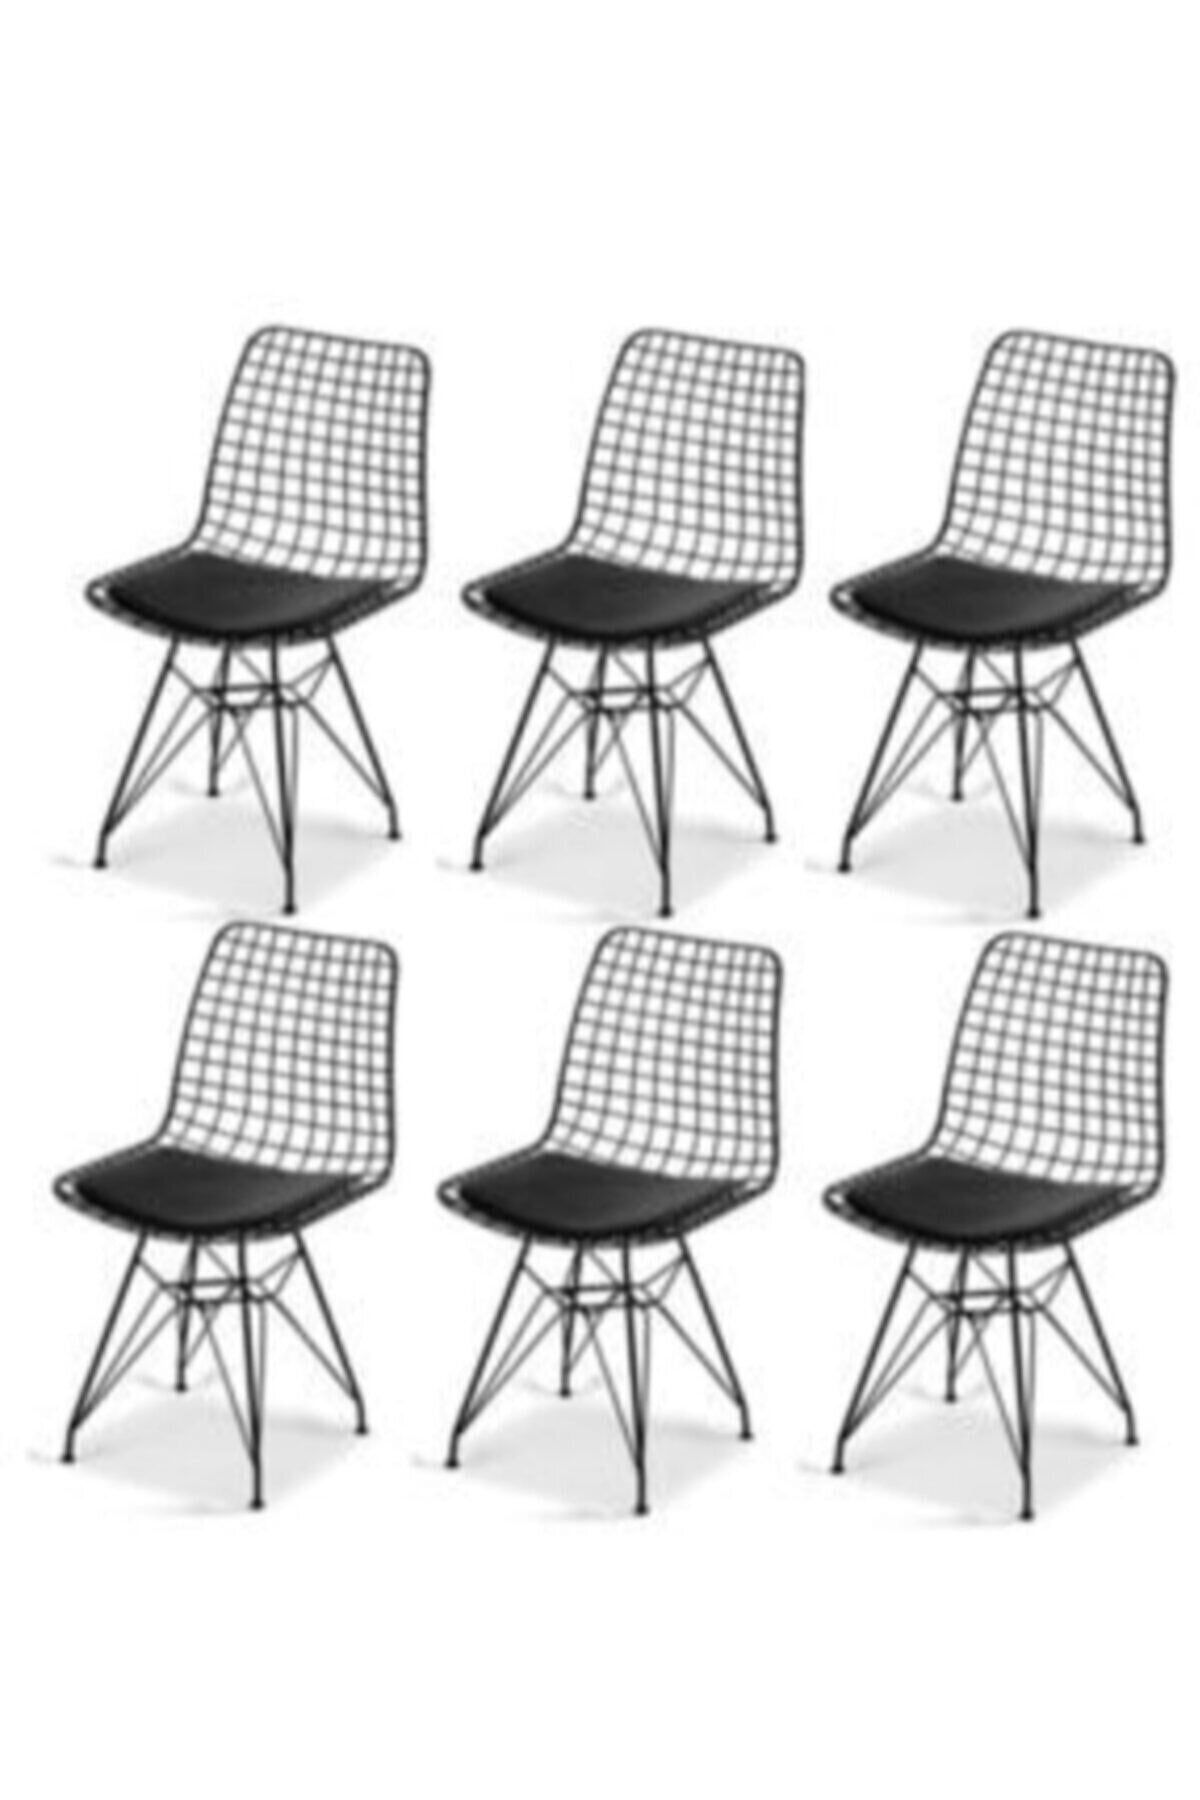 ÇELİK SANDALYE MASA Siyah 6' Lı Tel / Kafes Sandalye Mutfak Salon Cafe Sandalyes 6 Lı Takım